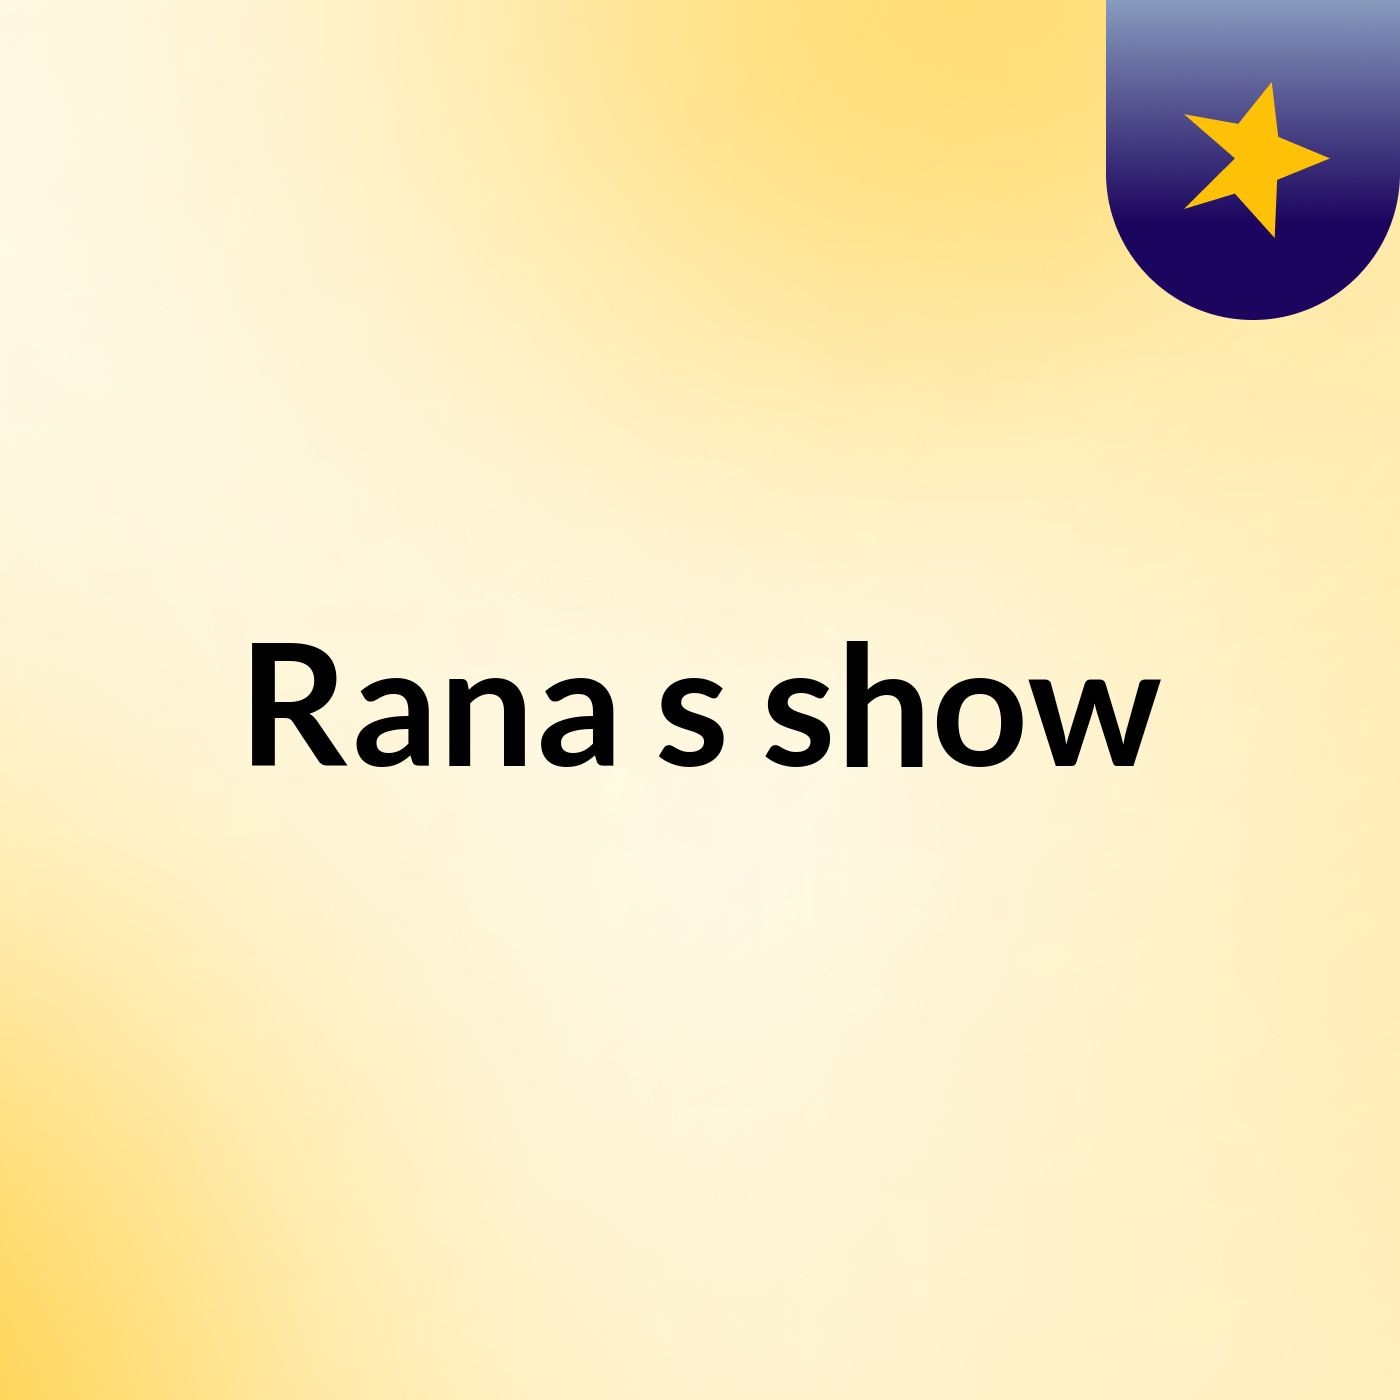 Rana's show